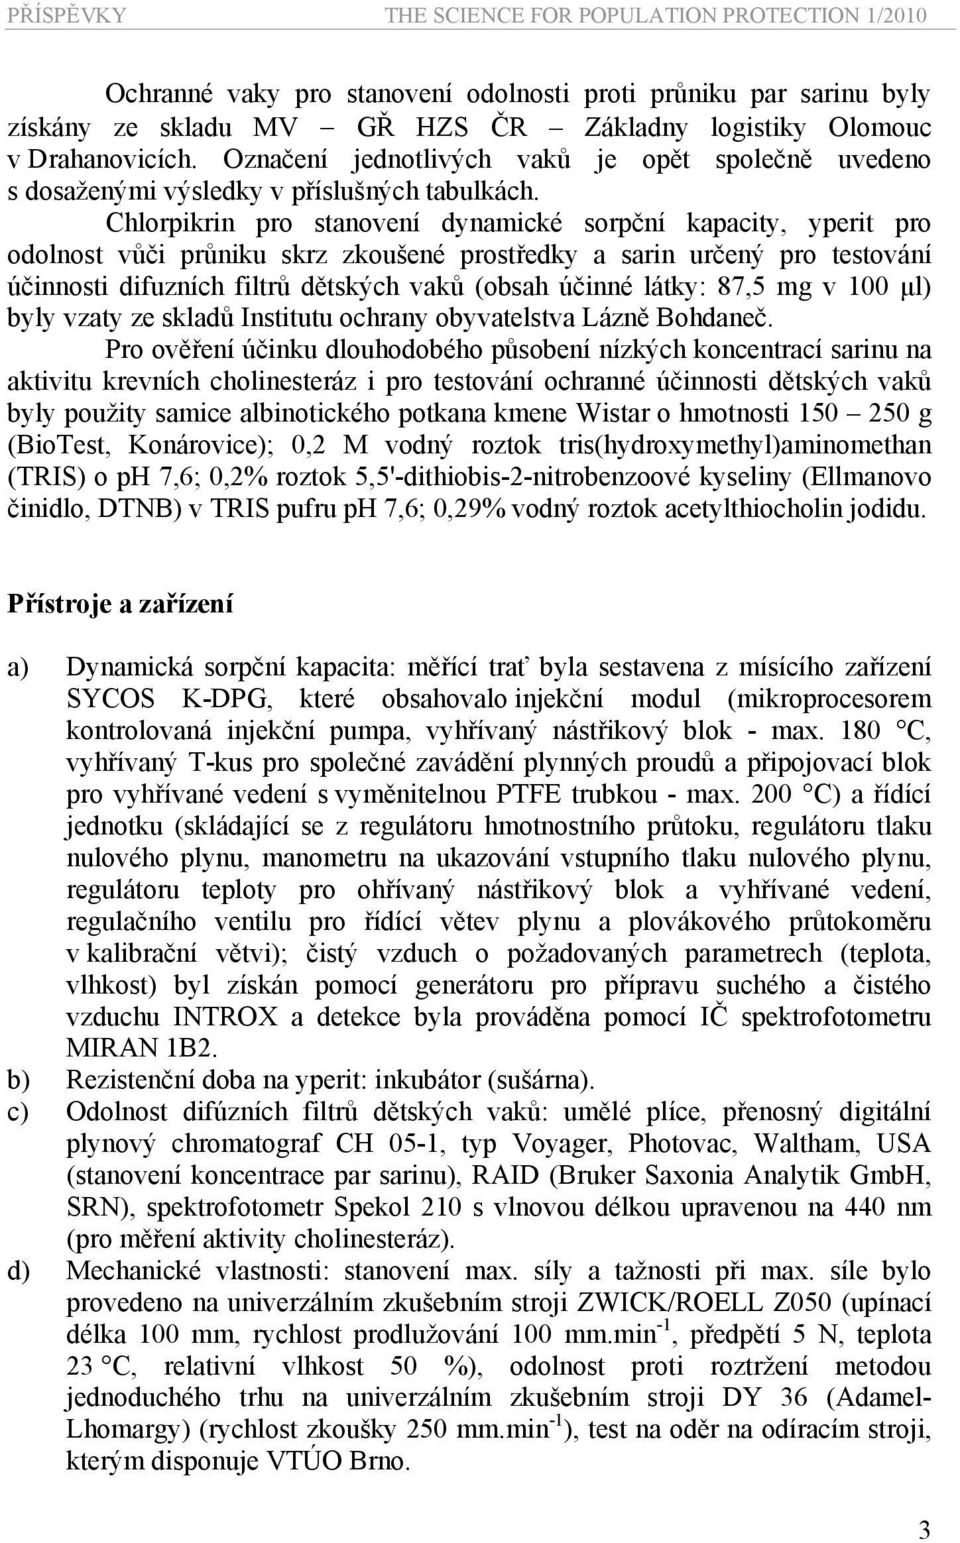 Chlorpikrin pro stanovení dynamické sorpční kapacity, yperit pro odolnost vůči průniku skrz zkoušené prostředky a sarin určený pro testování účinnosti difuzních filtrů dětských vaků (obsah účinné